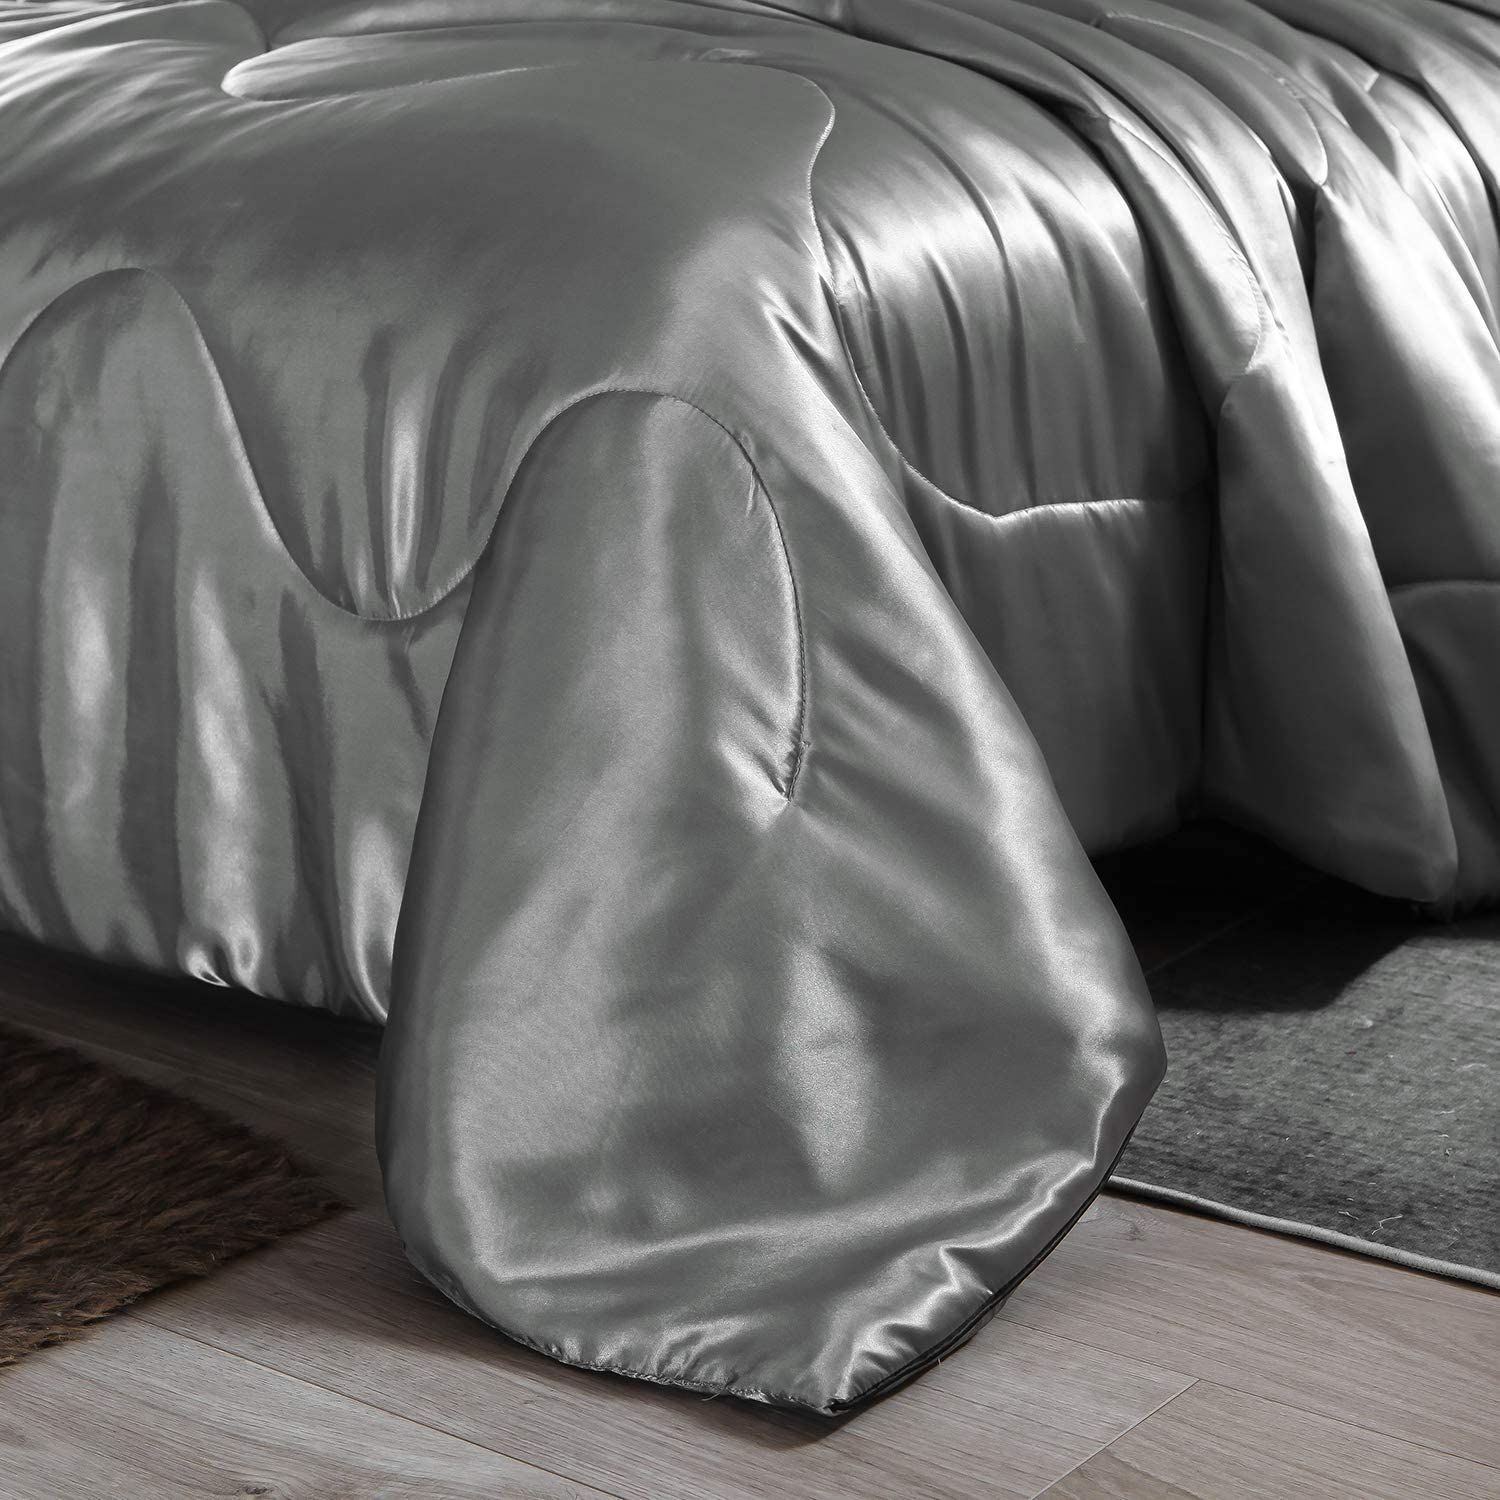 Details about   Btargot Silver Satin Silky Soft Quilt Warm Light Weighted Luxury Microfiber Bedd 